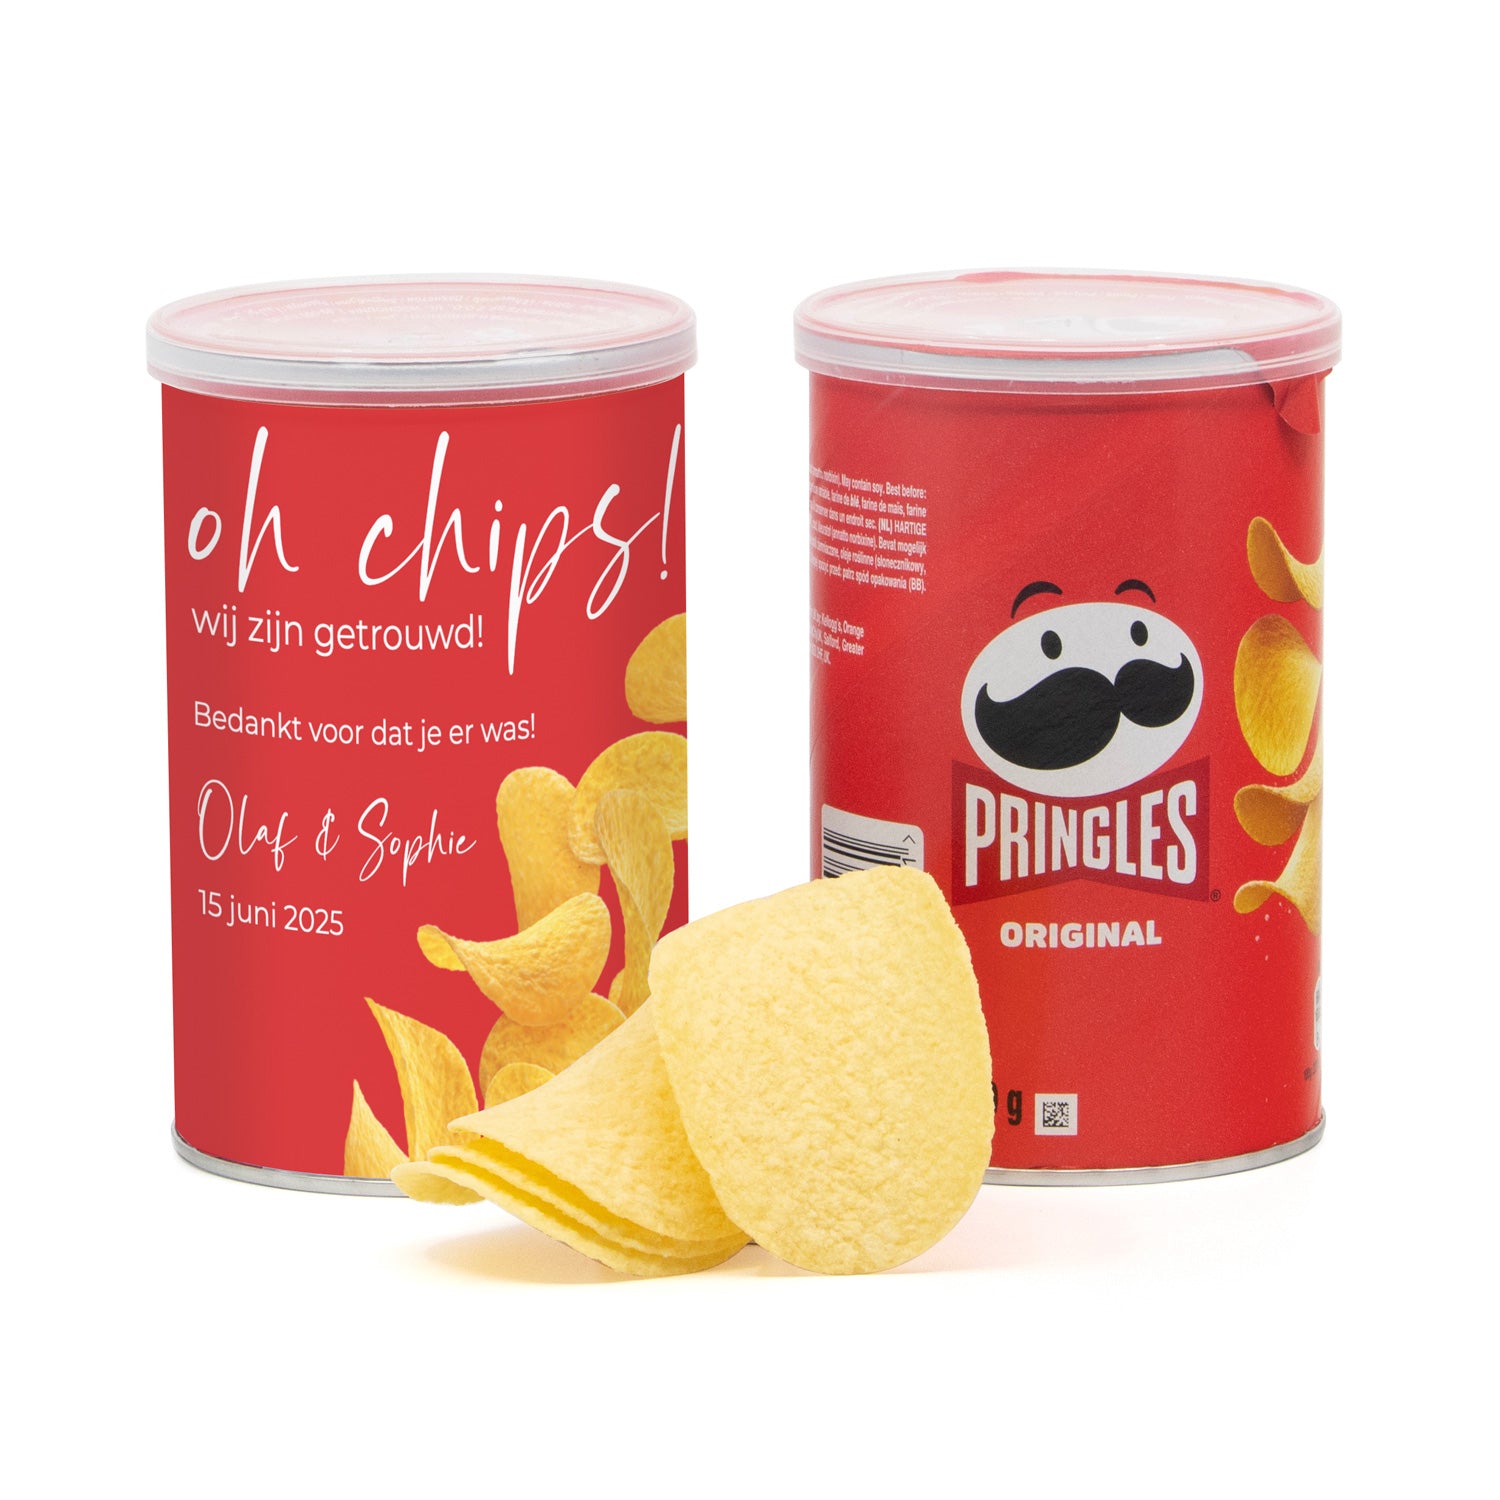 Oh chips! Wij zijn getrouwd Pringles 70 gram - Trouwen - Bedankjes.nl